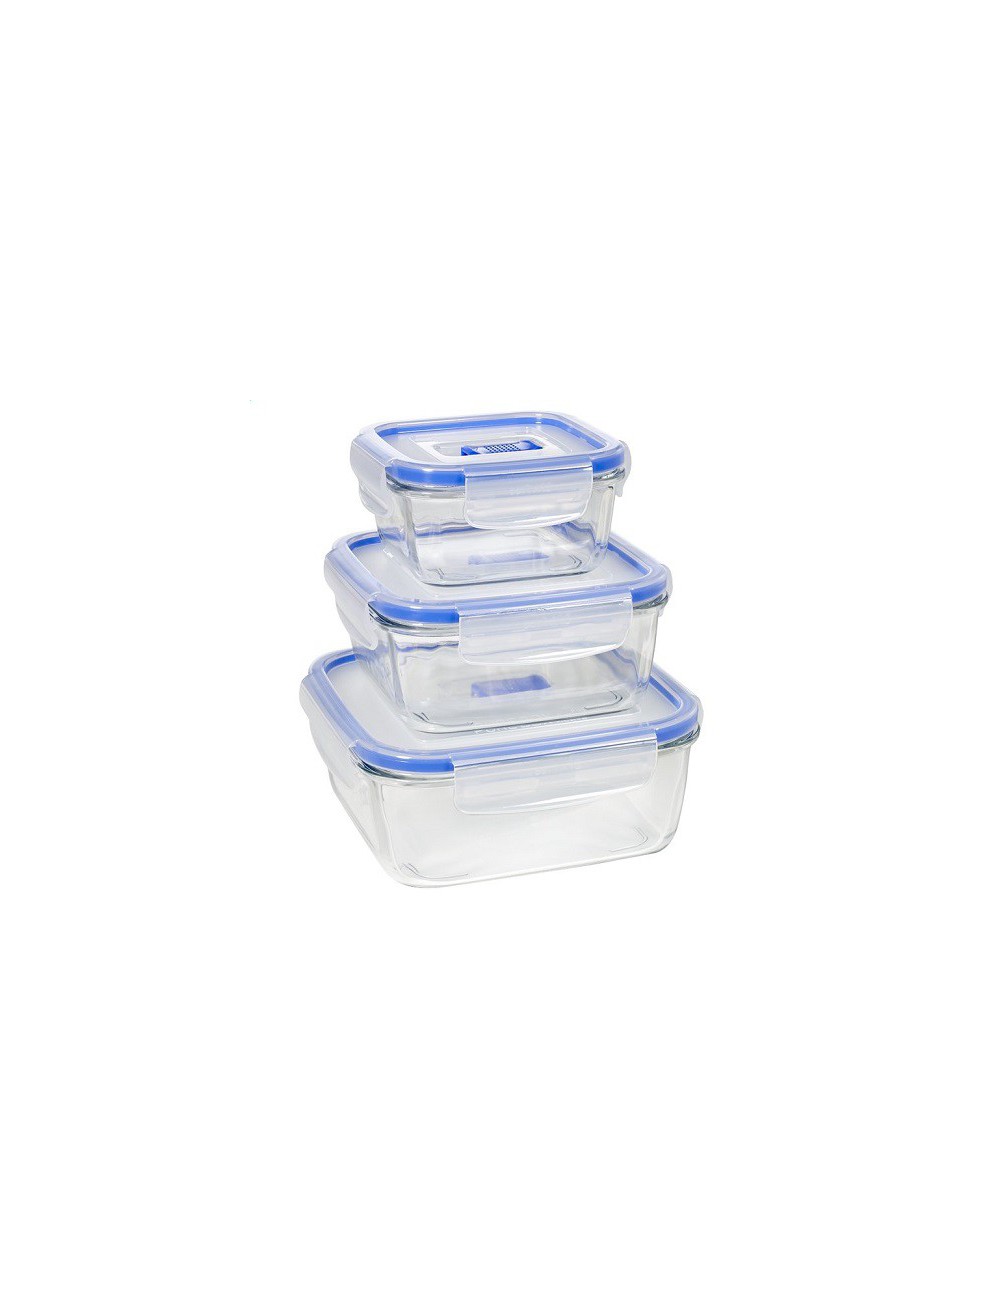 Fiambreras de cristal con tapa de plástico apto para congelador